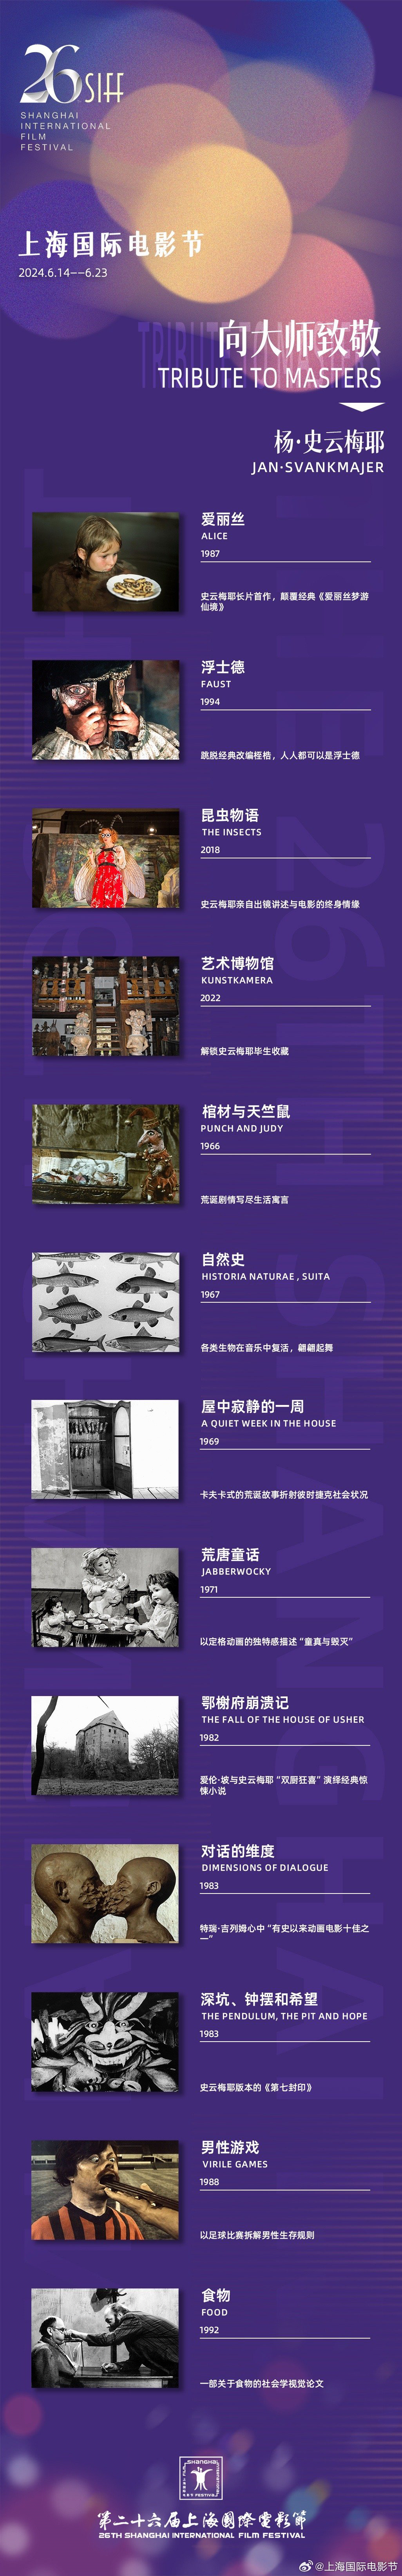 第26届上影节公布首批片单 展映杨·史云梅耶作品